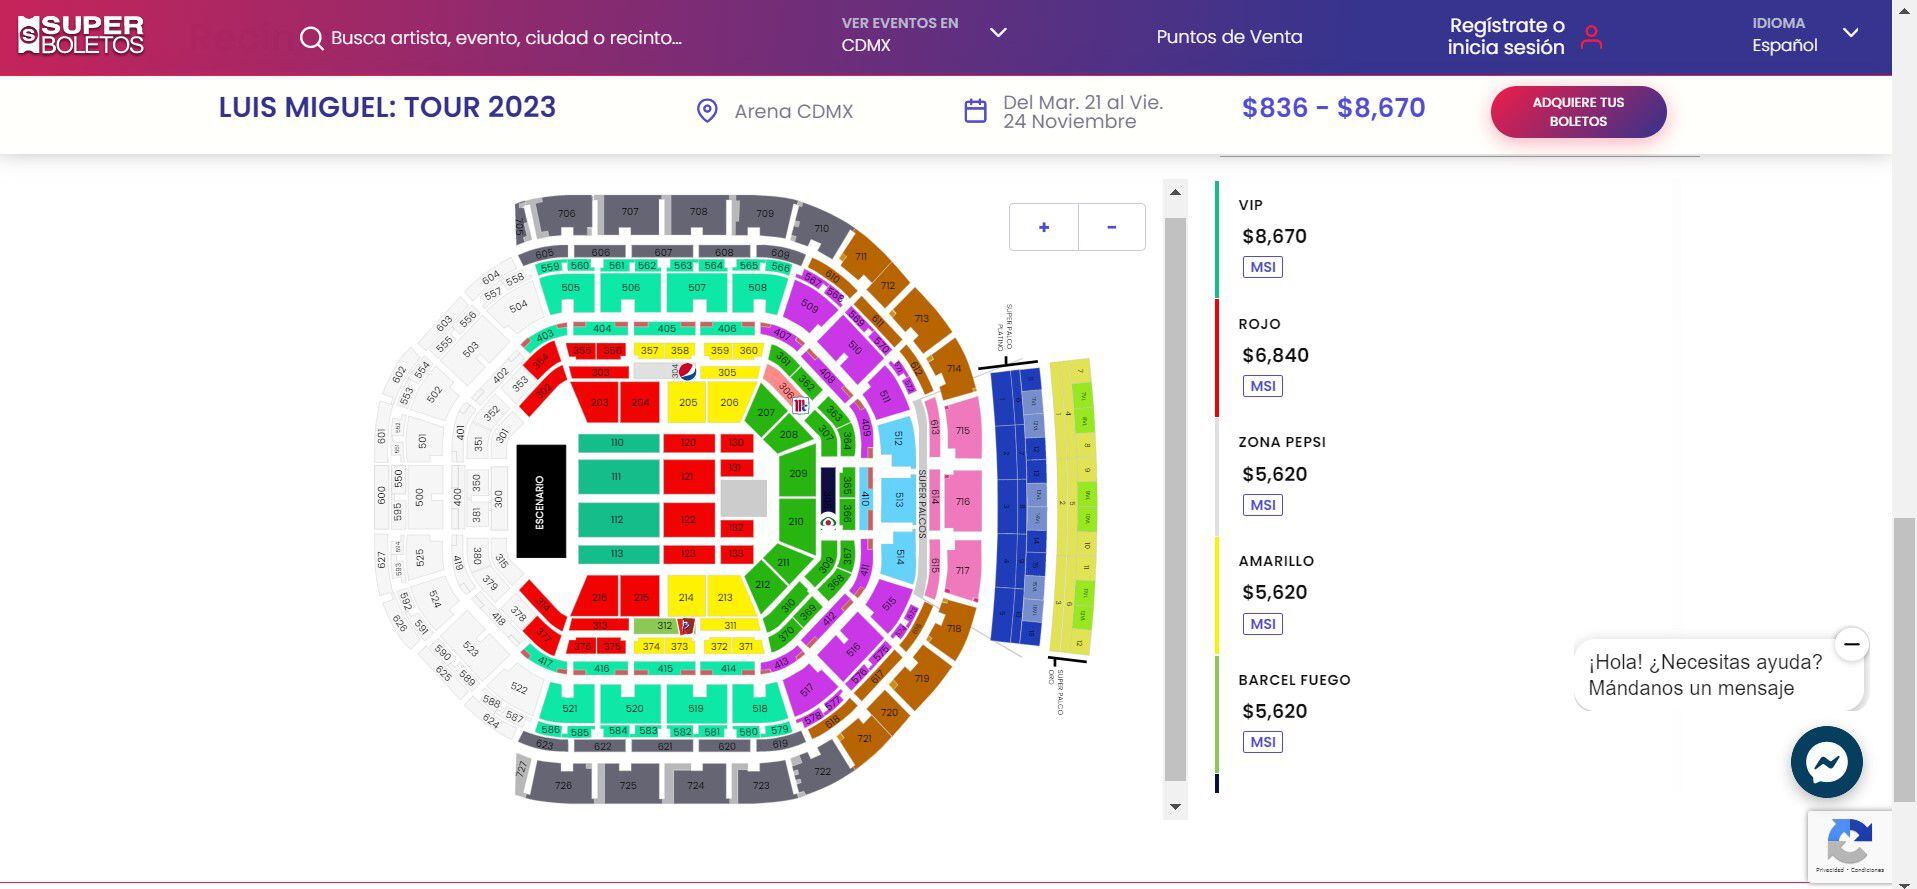 Precios de los boletos de Luis Miguel en Arena CDMX. (Foto: Superboletos).